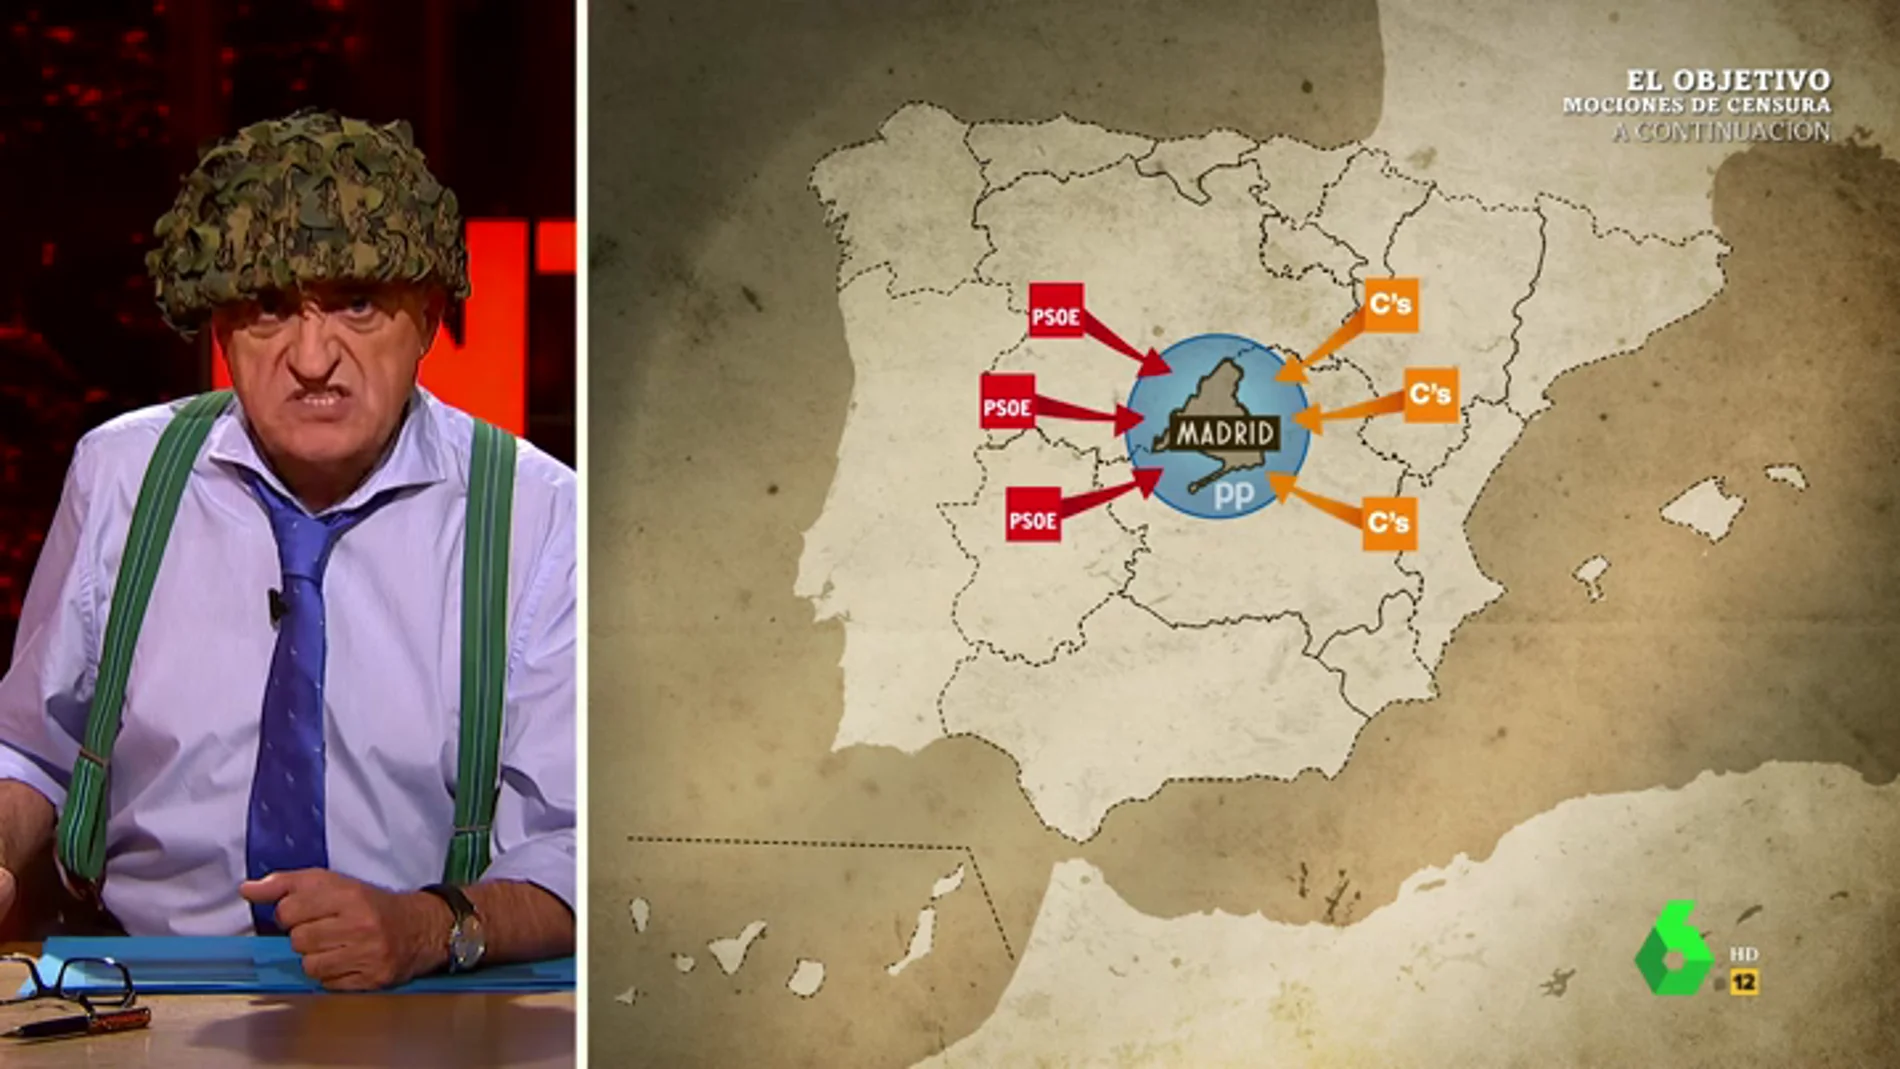 La reacción de Wyoming al descubrir el 'terremoto' político sufrido en España: "¡Estamos en guerra!"